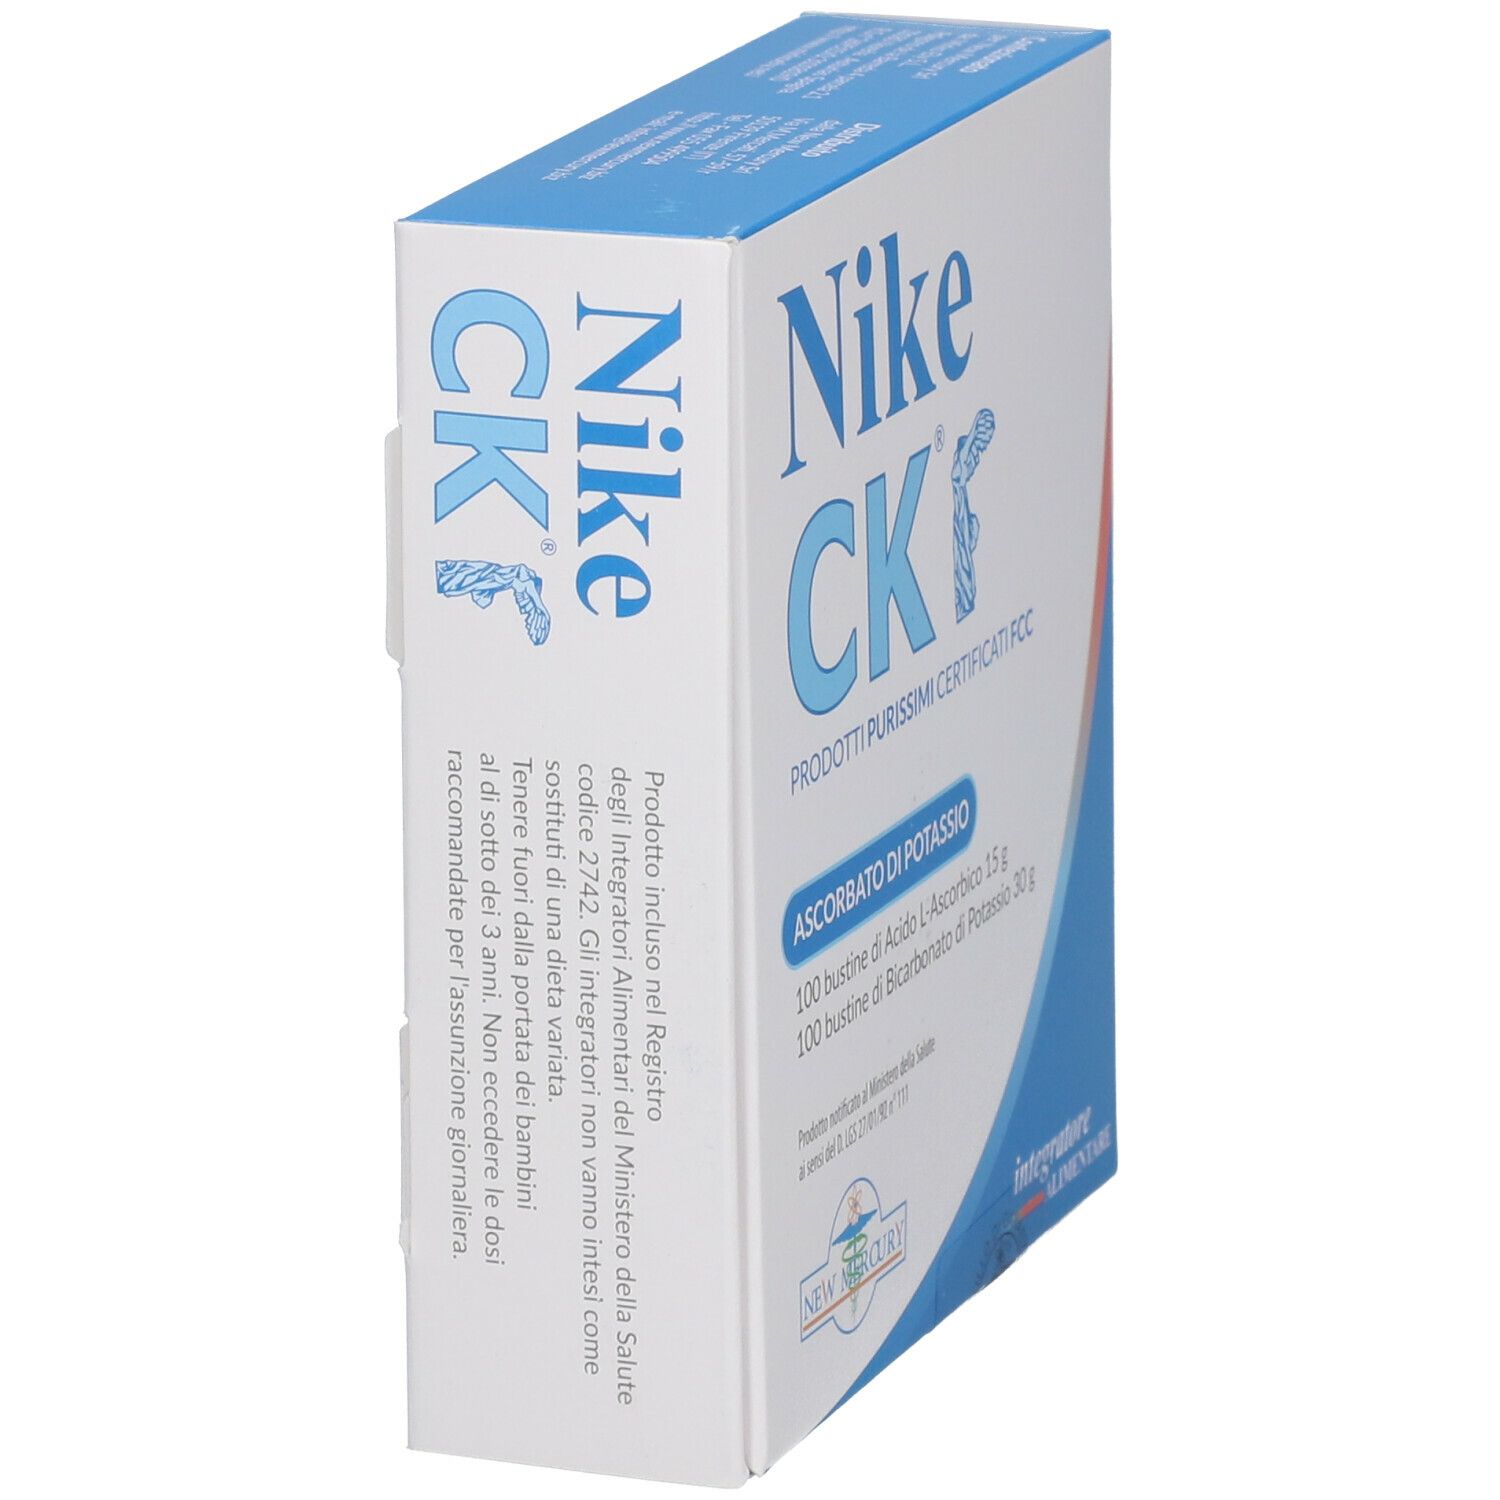 New Mercury NIKE CK ® Ascorbato di Potassio